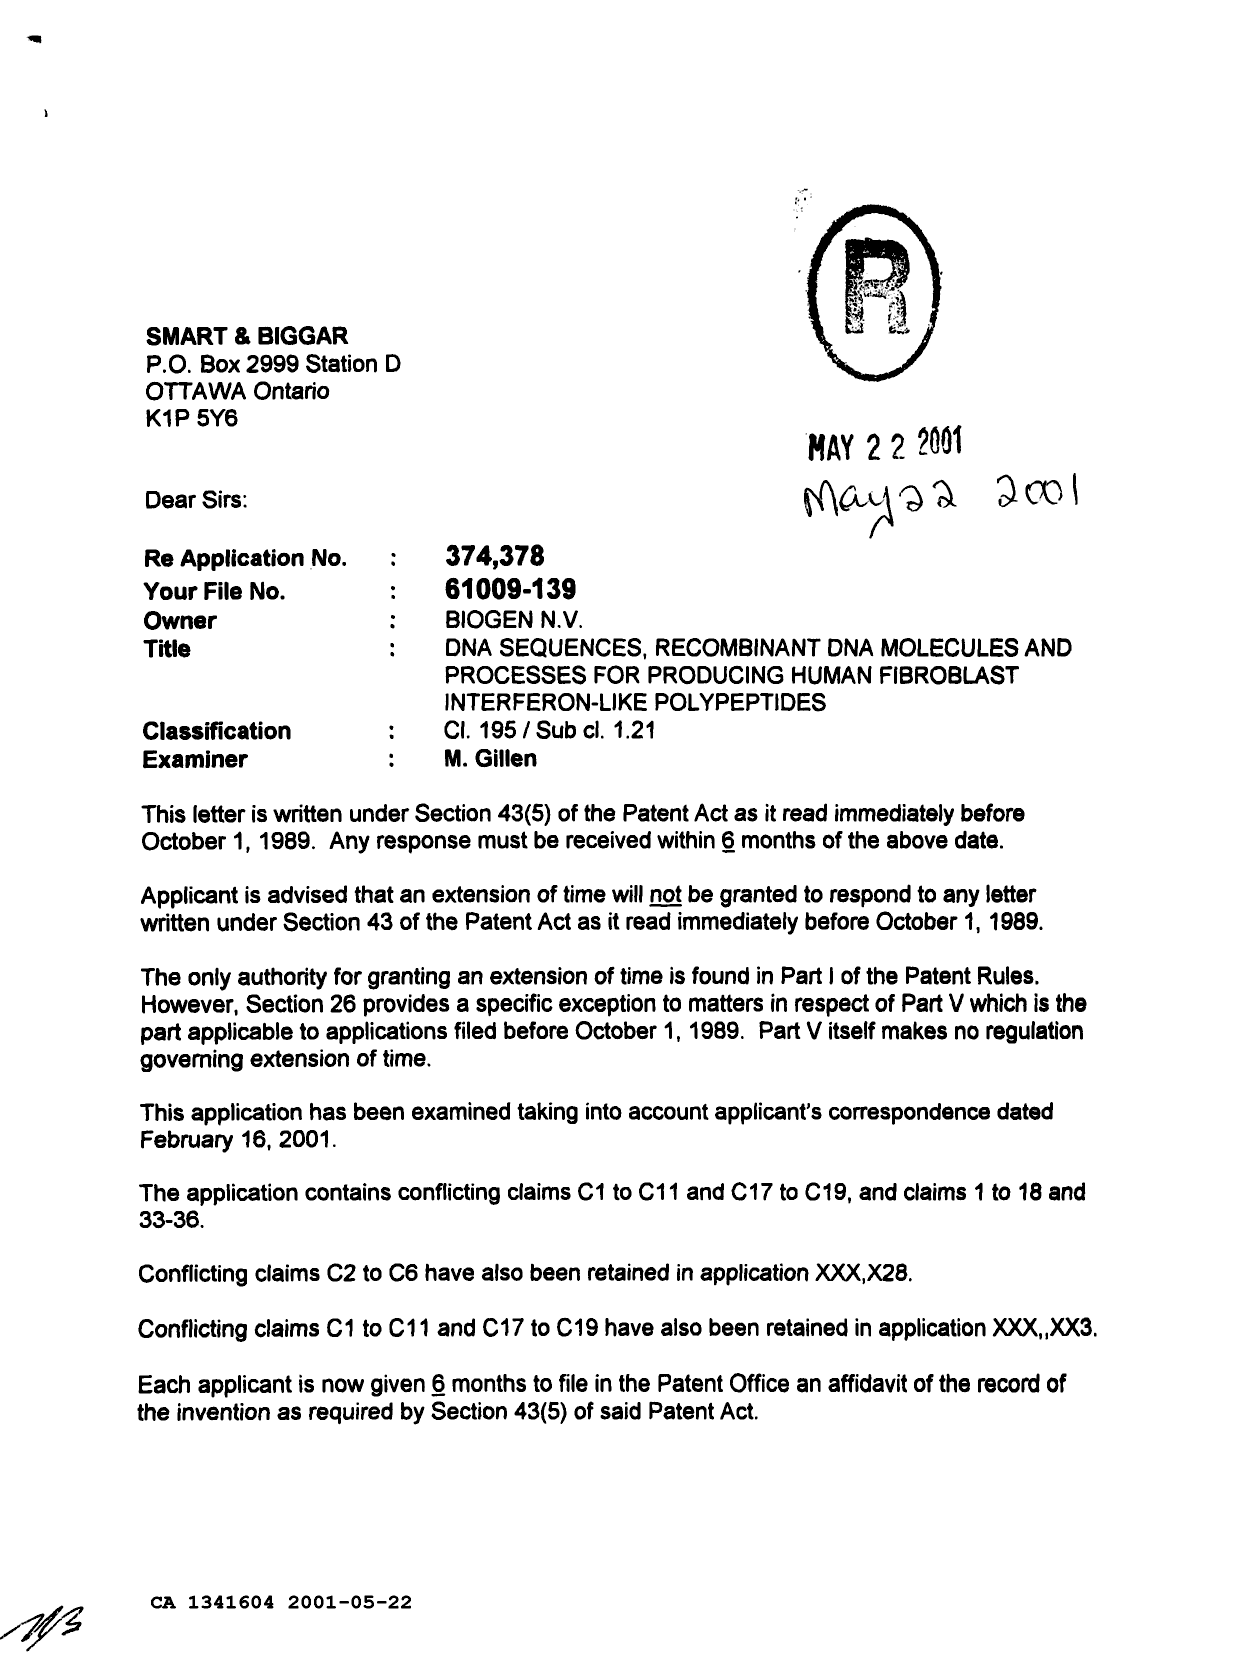 Document de brevet canadien 1341604. Demande d'examen 20010522. Image 1 de 2